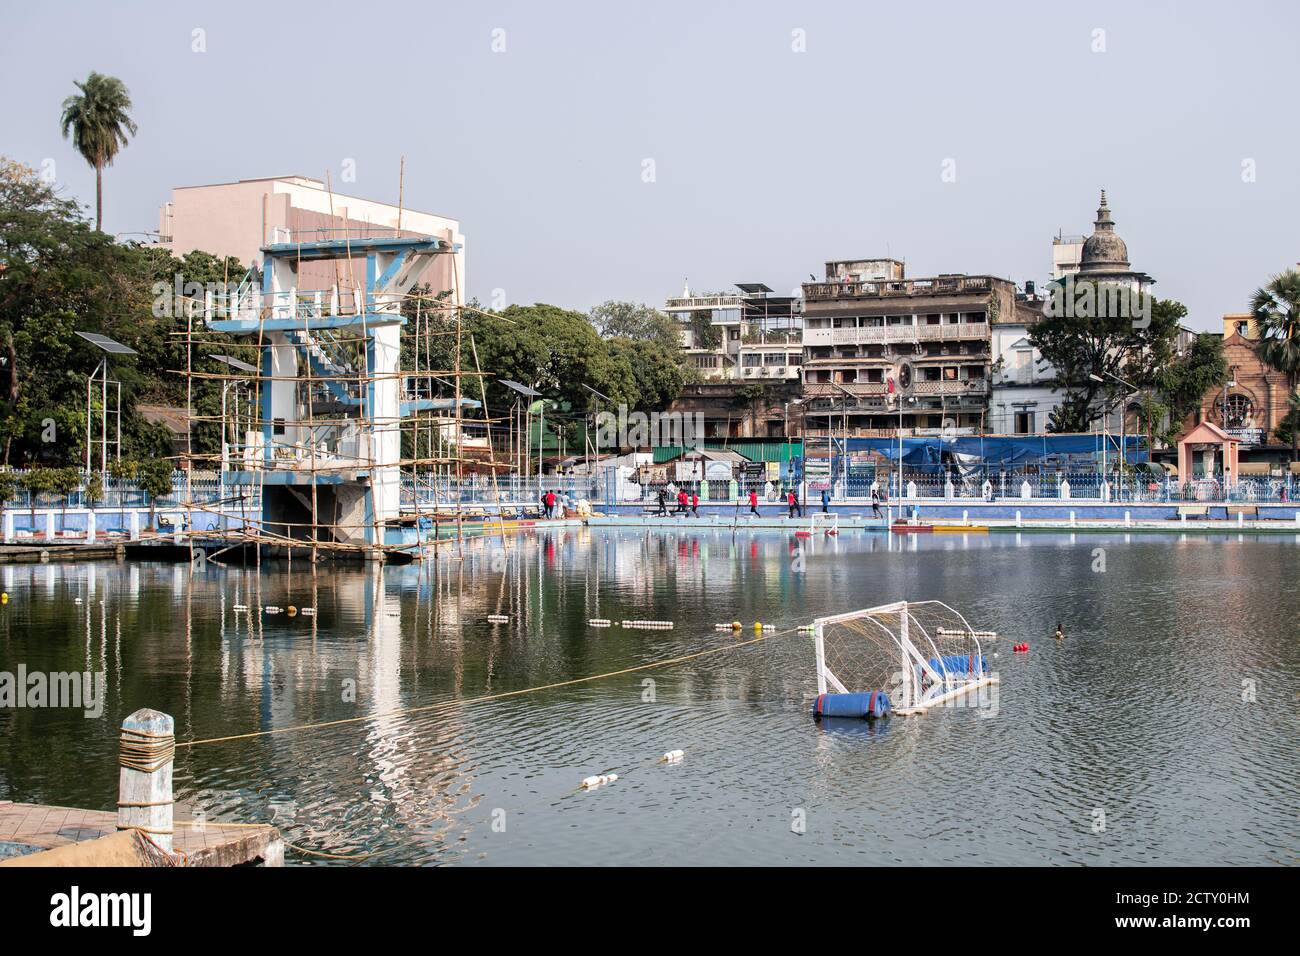 Kolkata, Inde - 2 février 2020 : vue sur un parc aquatique avec tour de plongée et un objectif de water-polo avec des personnes non identifiées en arrière-plan le février Banque D'Images